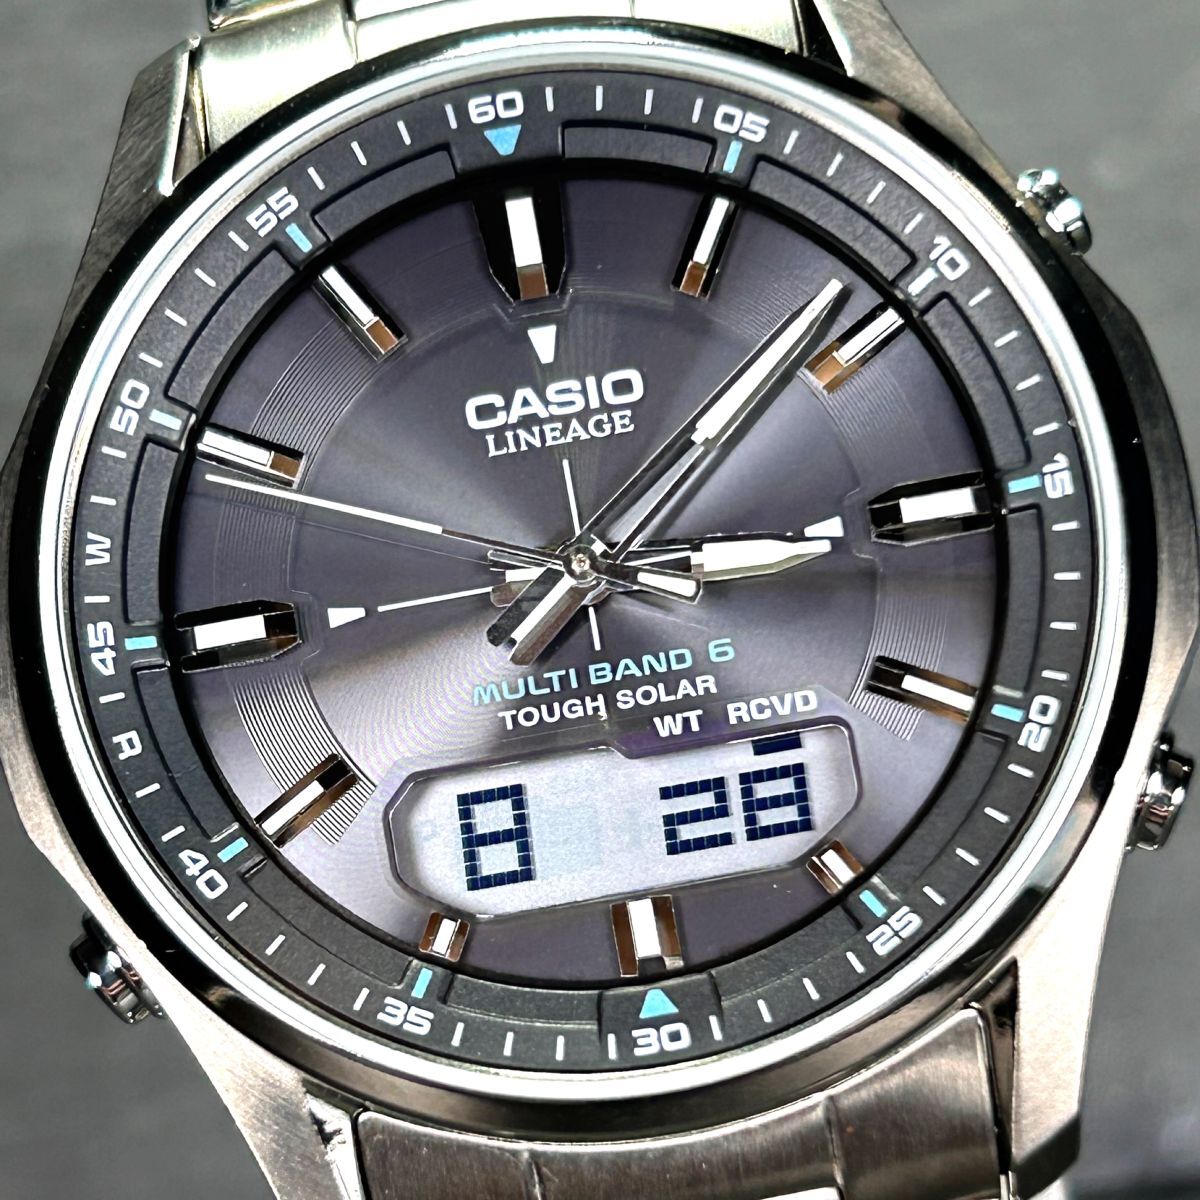 美品 CASIO カシオ LINEAGE リニエージ LCW-M100TSE-1A 腕時計 タフソーラー 電波ソーラー アナデジ チタニウム 多機能 メンズ 動作確認済の画像1